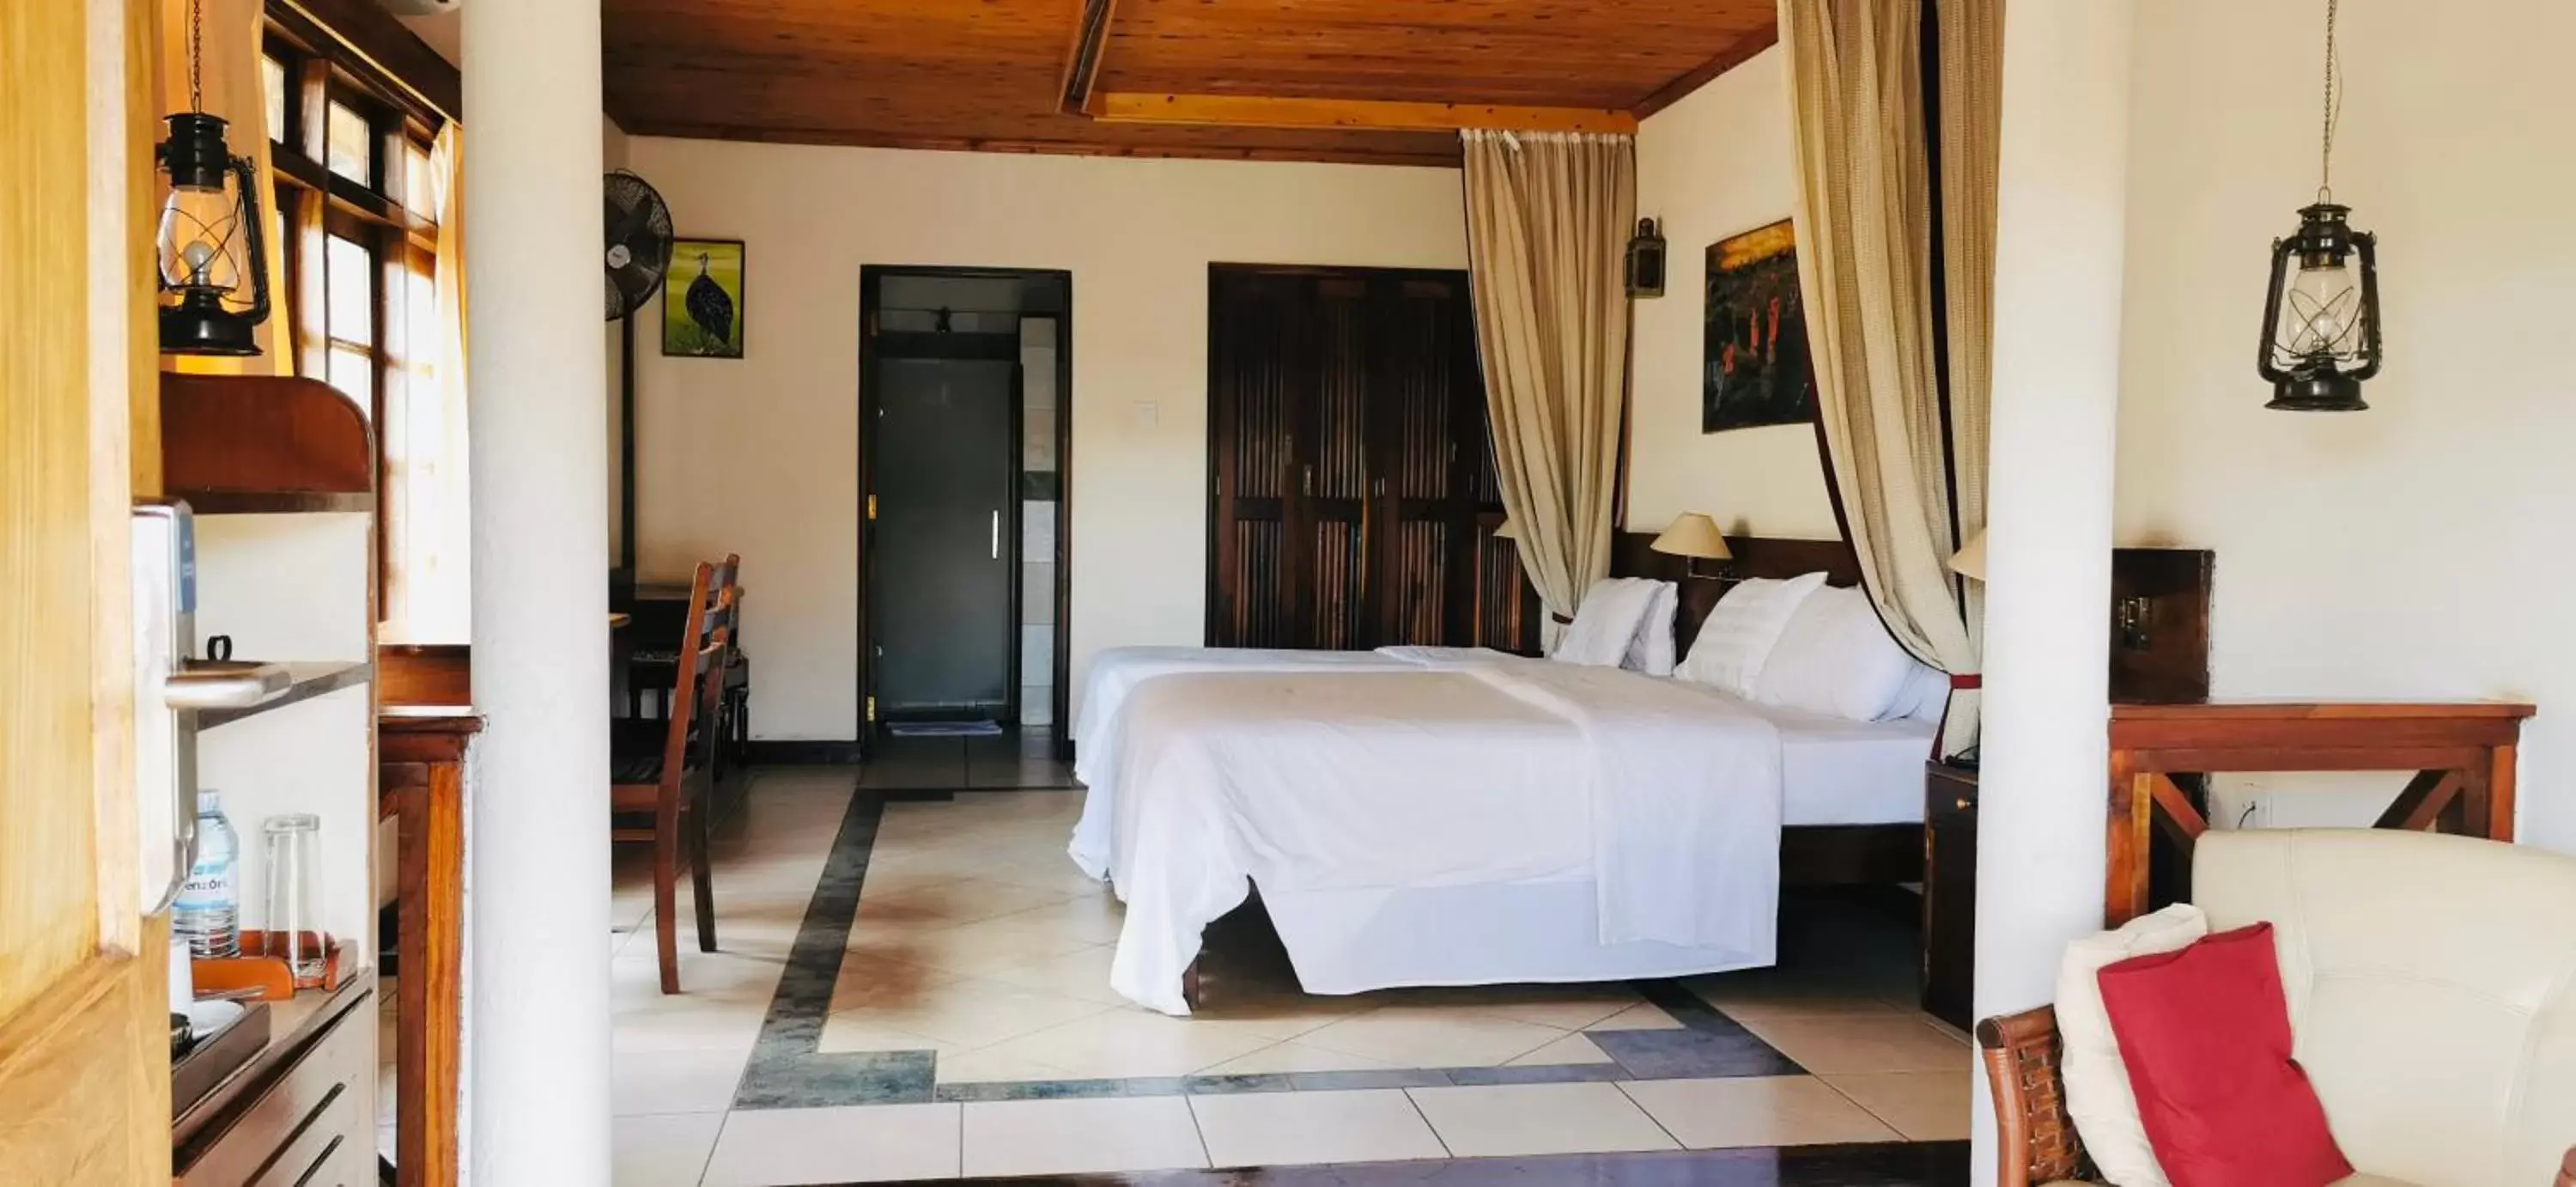 Bedroom in Jinja Nile Resort